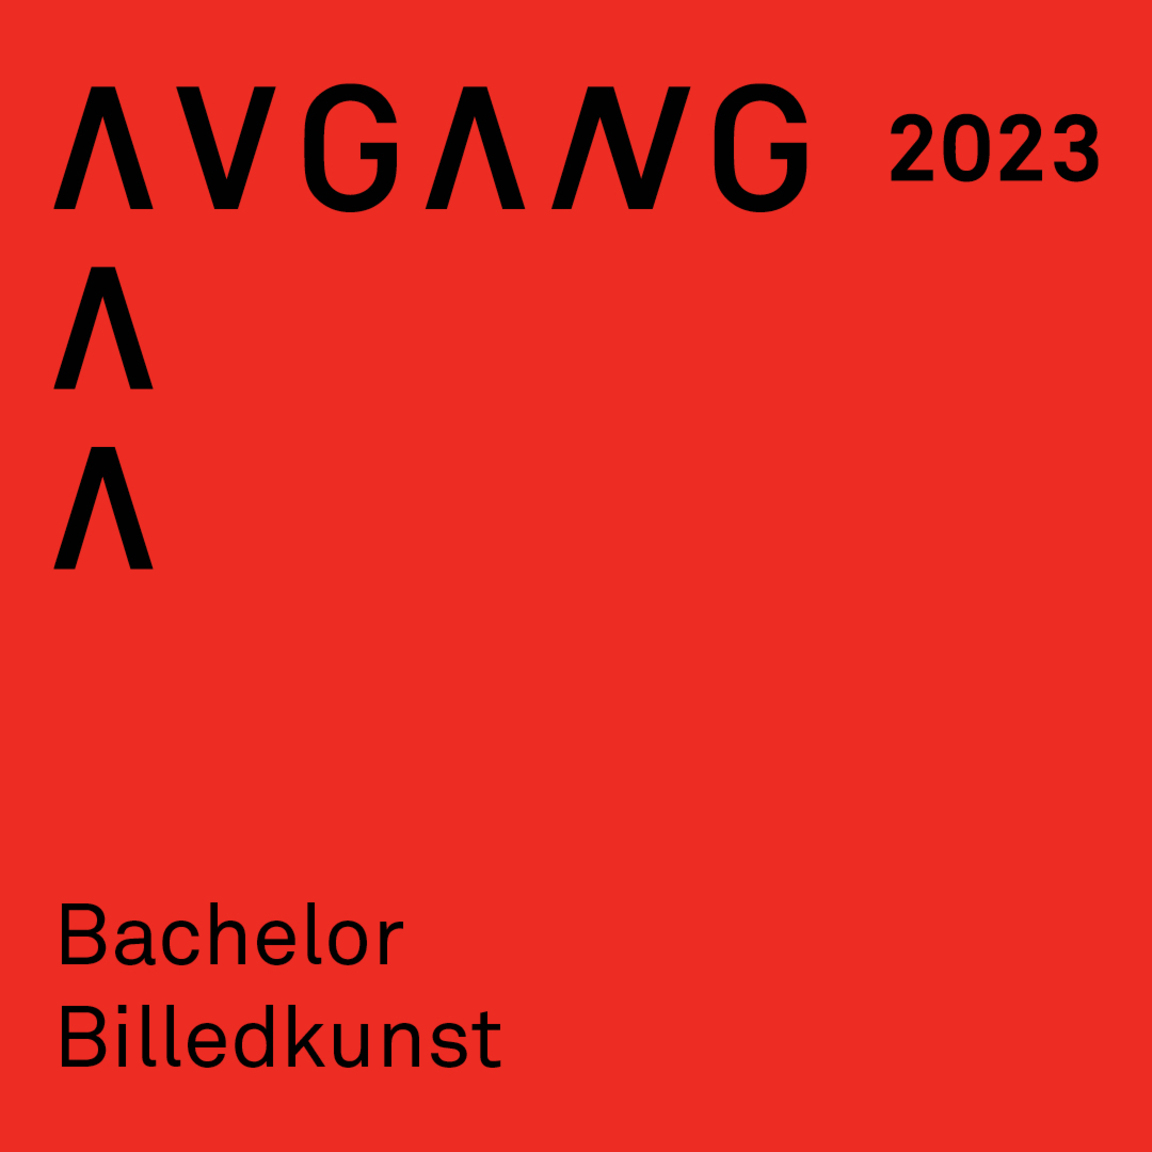 Avgang 2023: Bachelor billedkunst